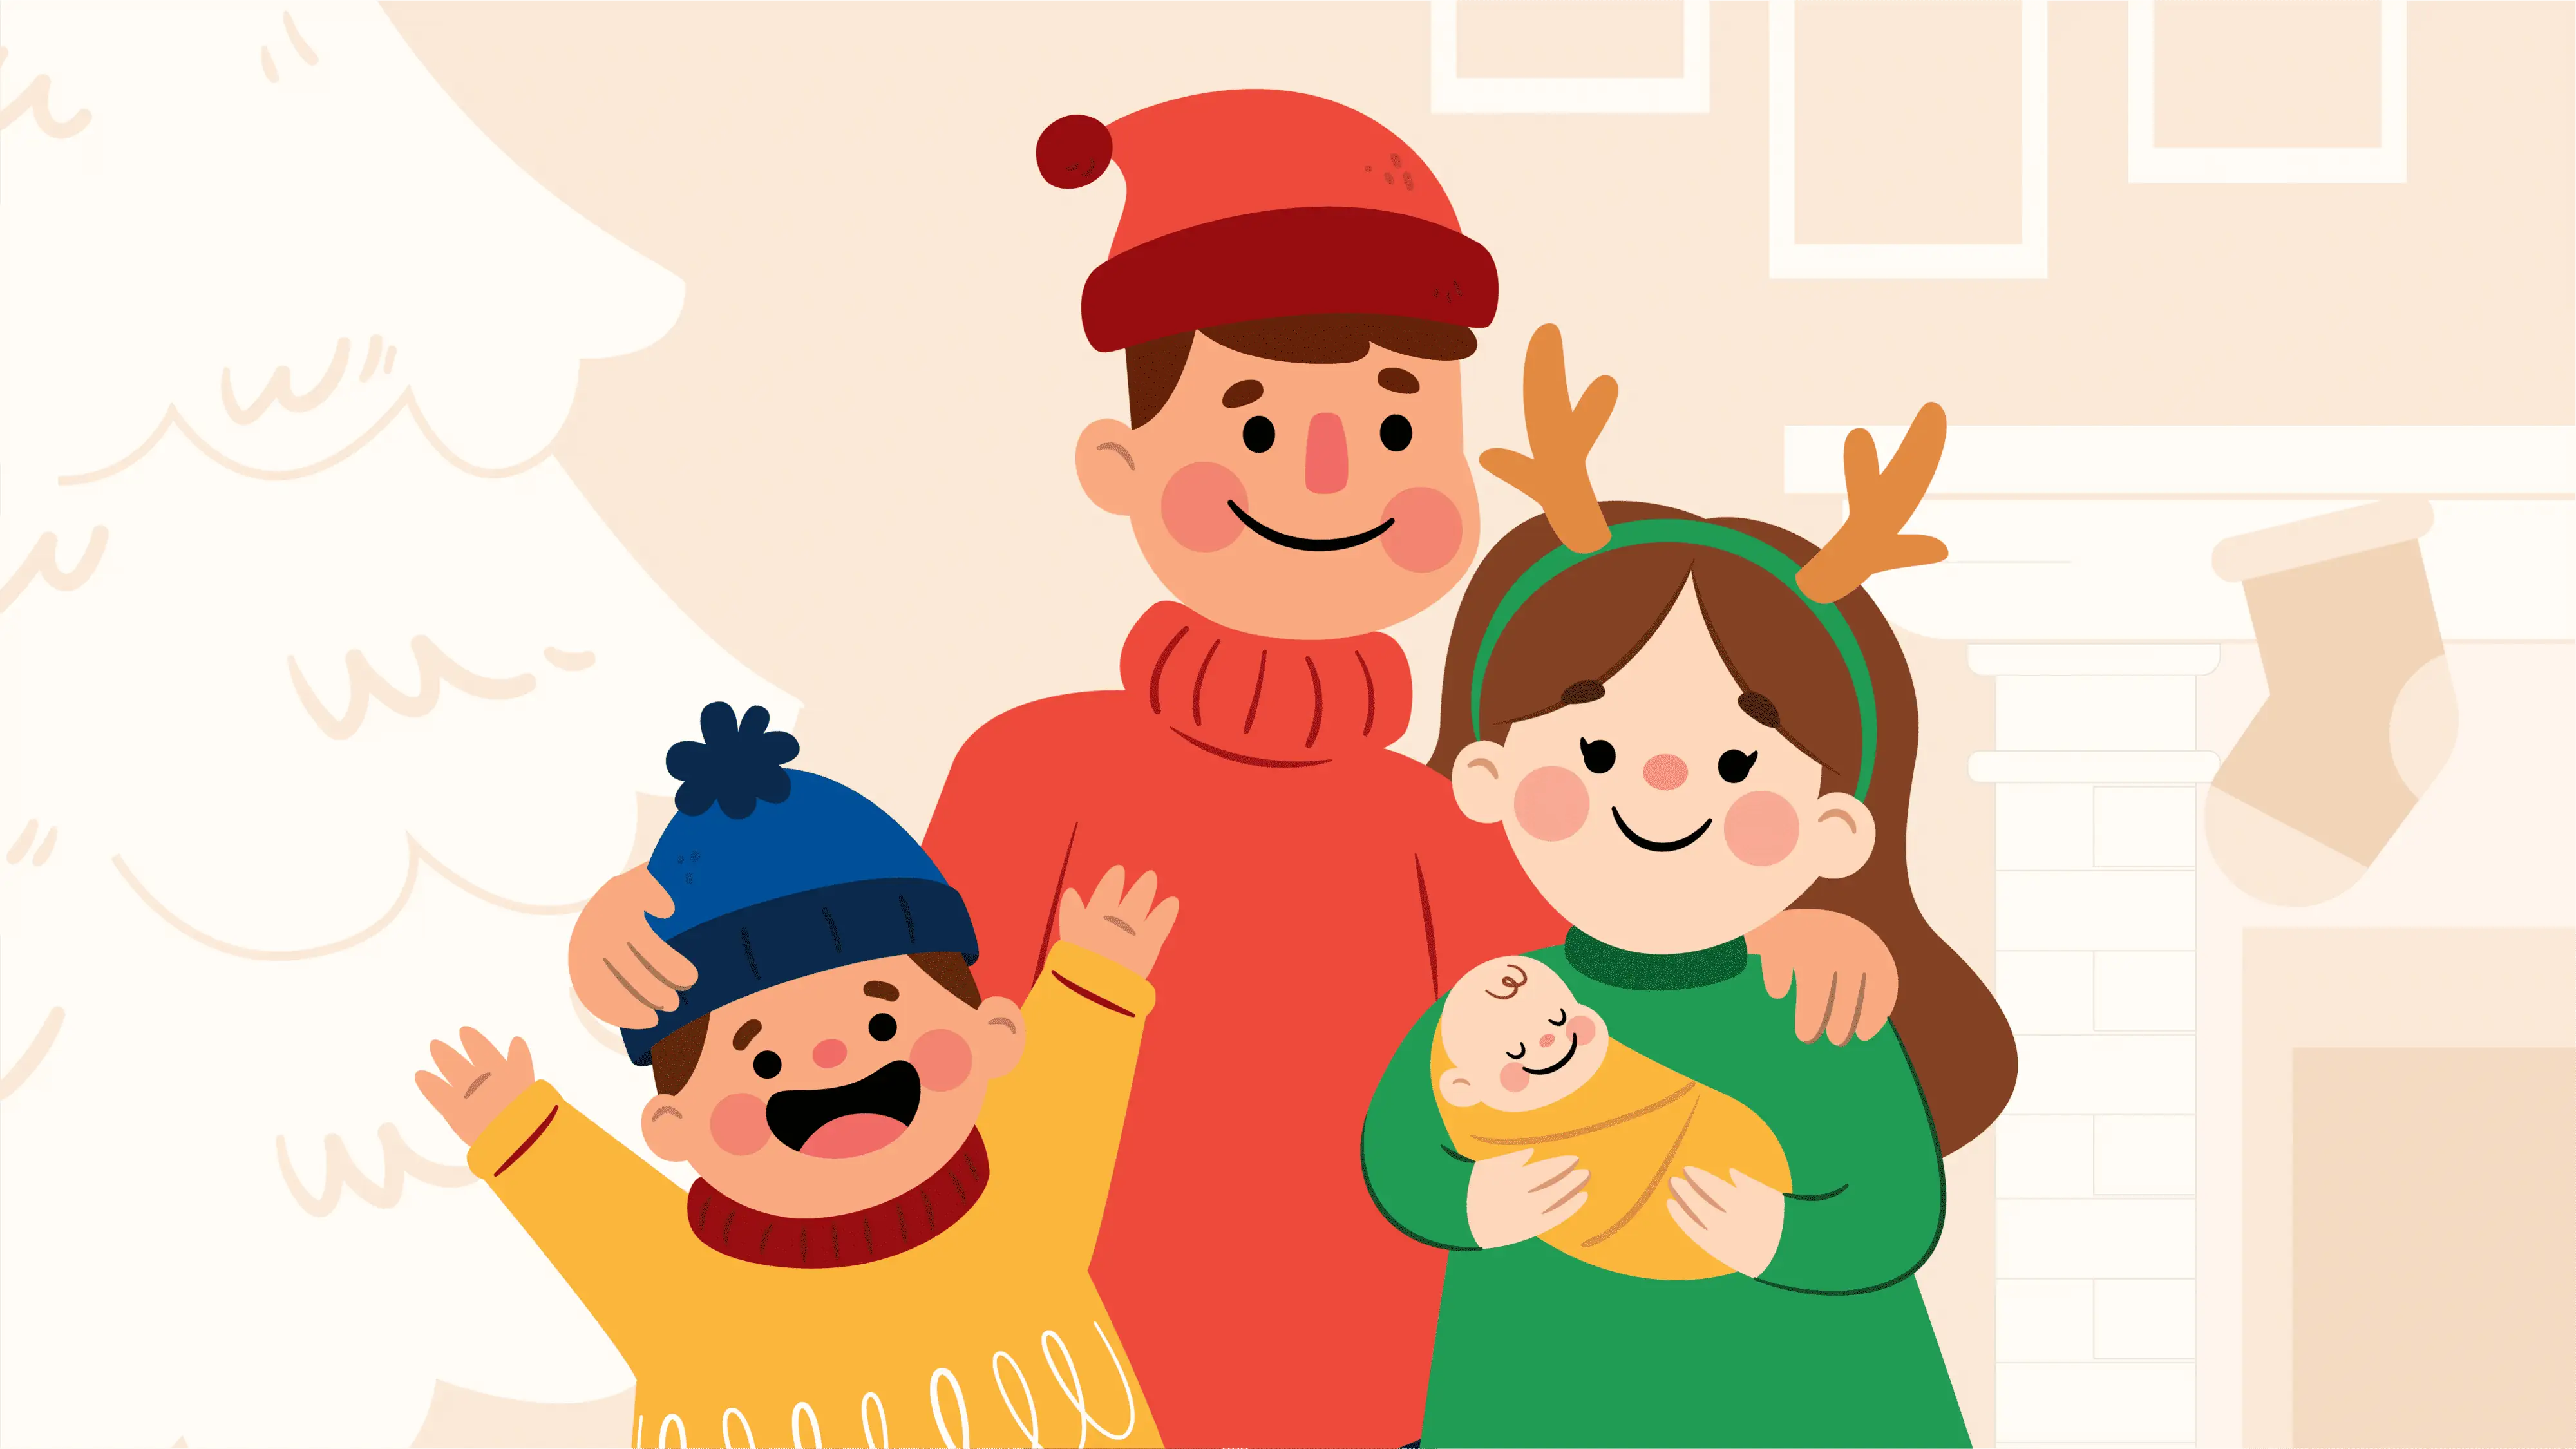 40 câu hỏi cho một bài kiểm tra Giáng sinh dành cho gia đình vào năm 2021 (100% thân thiện với trẻ em!)